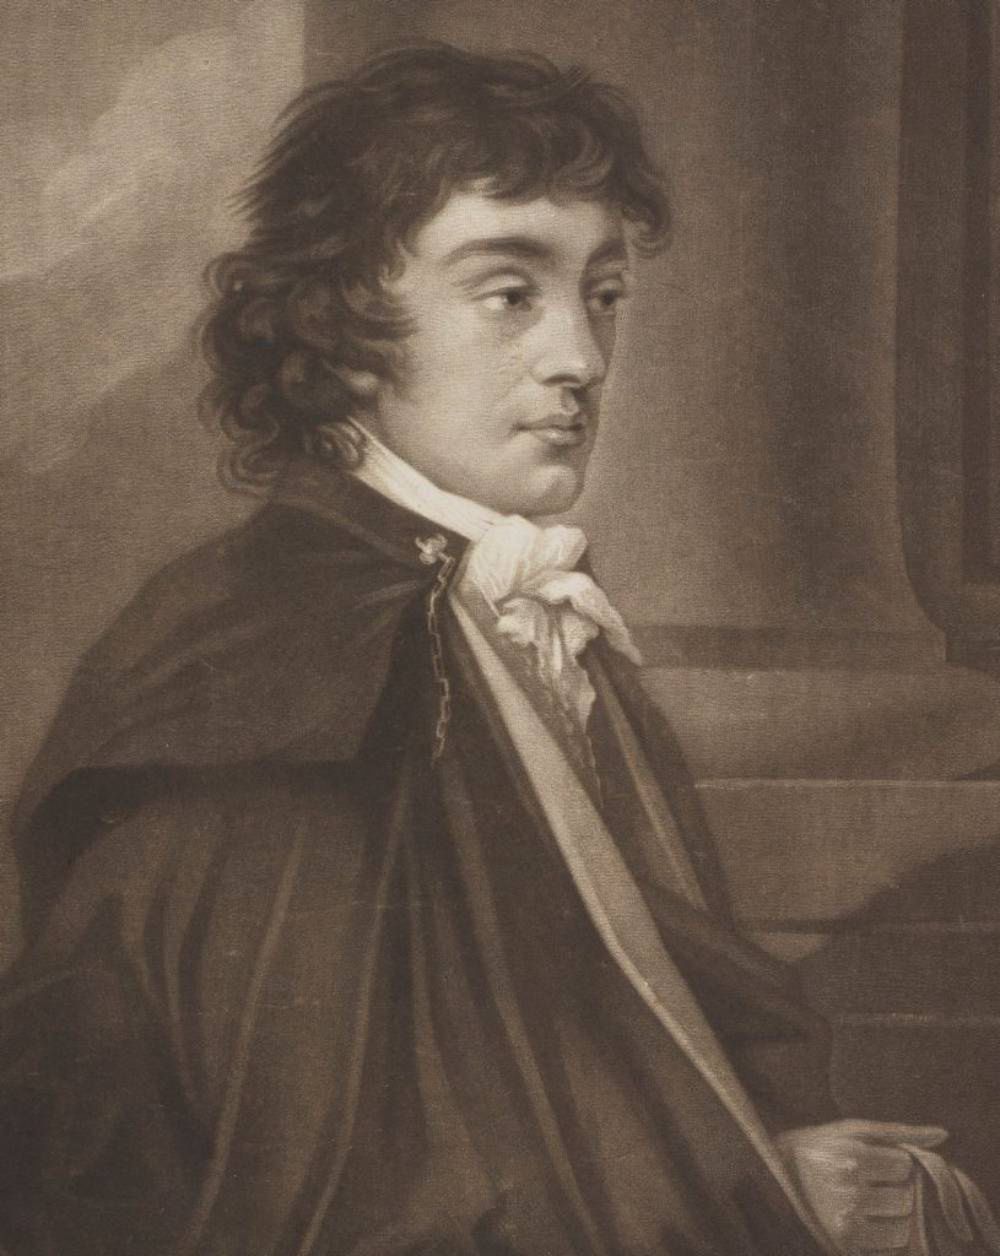 Podobizna księcia Adama Jerzego Czartoryskiego z końca XVIII wieku